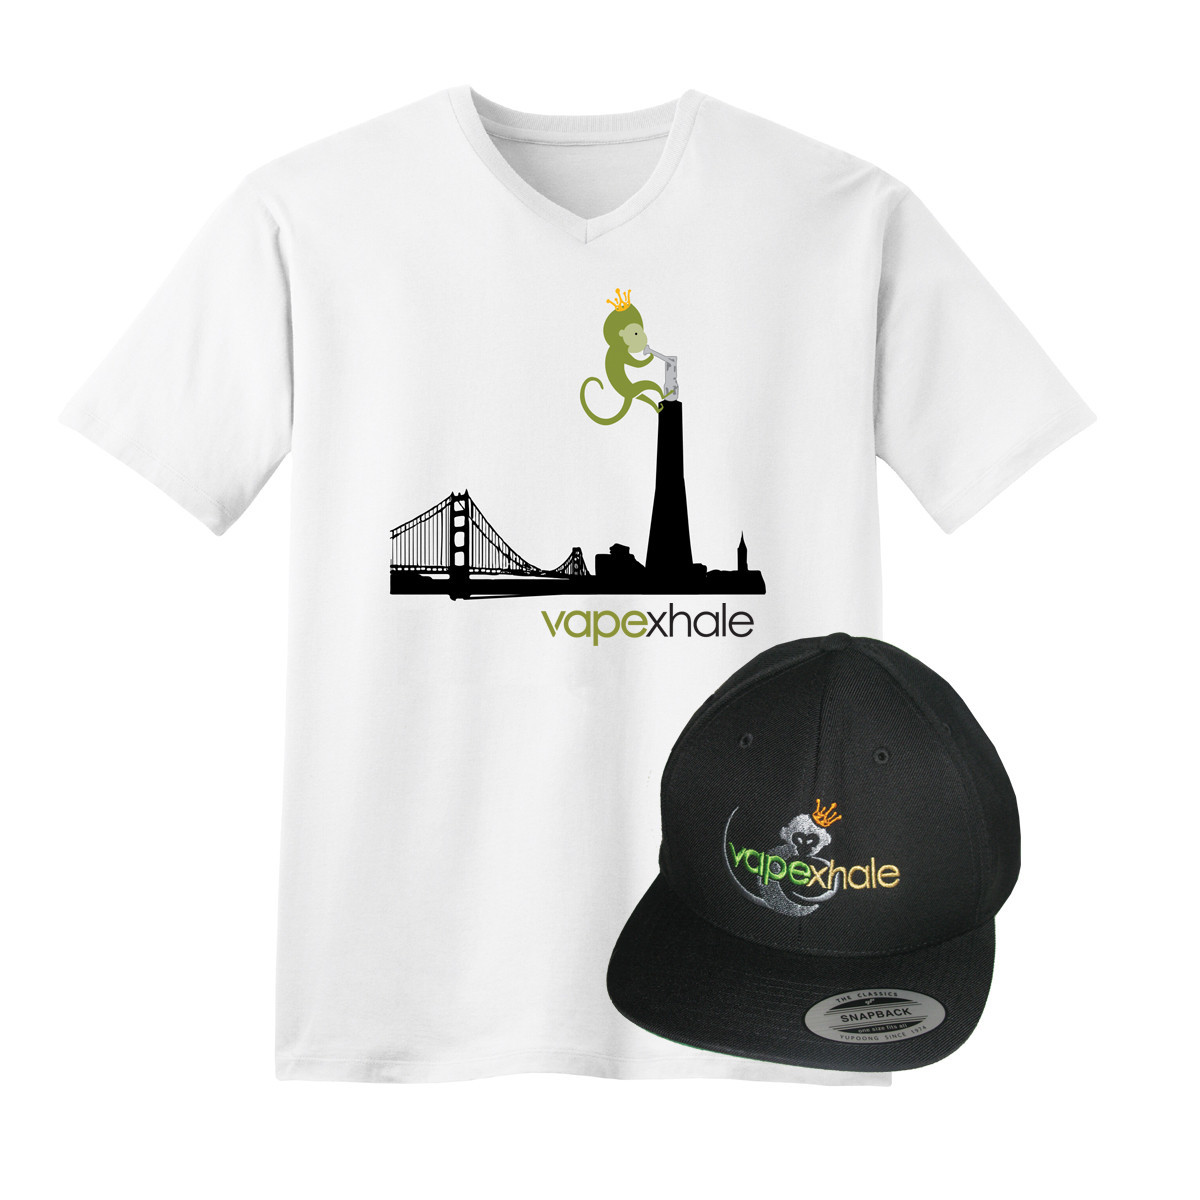 Vapexhale San Fran Skyline V-Neck T-Shirt & Hat Bundle